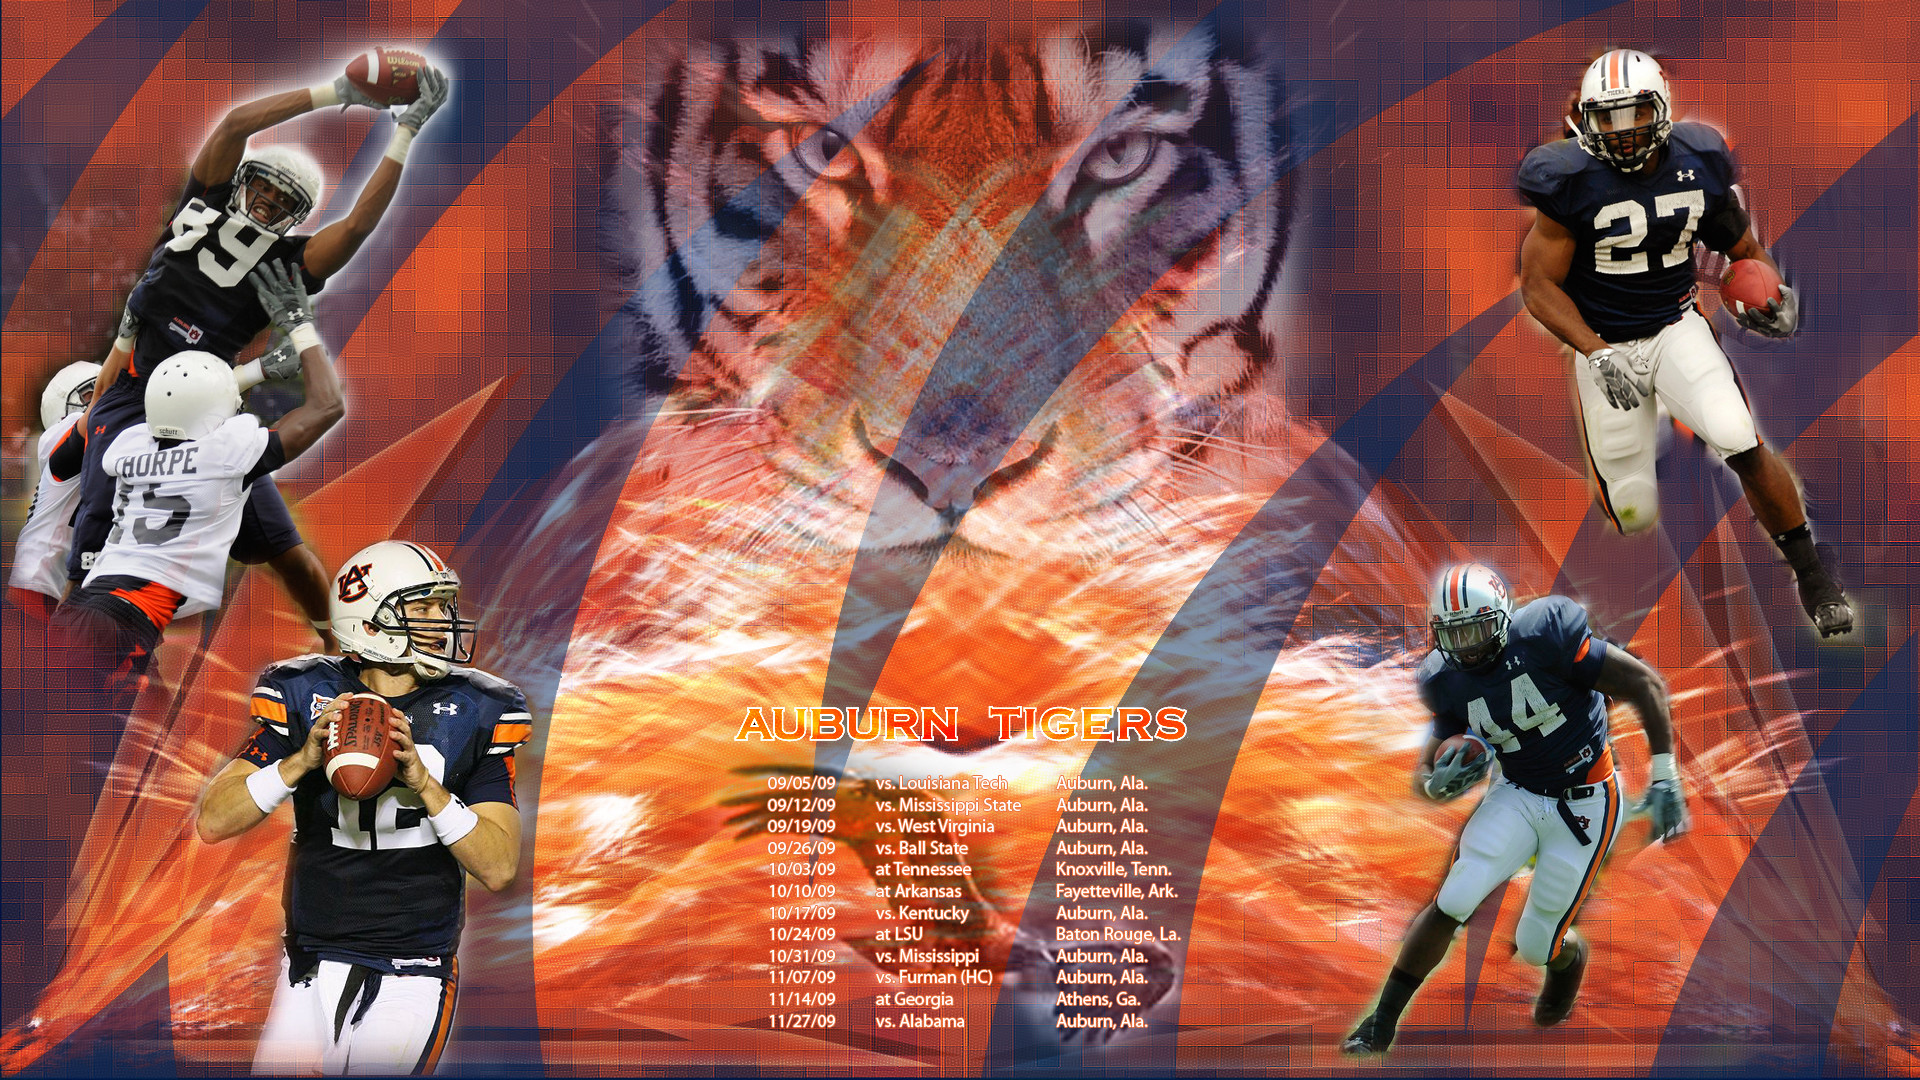 1920x1080 Auburn Tigers Football Wallpaper War Eagle